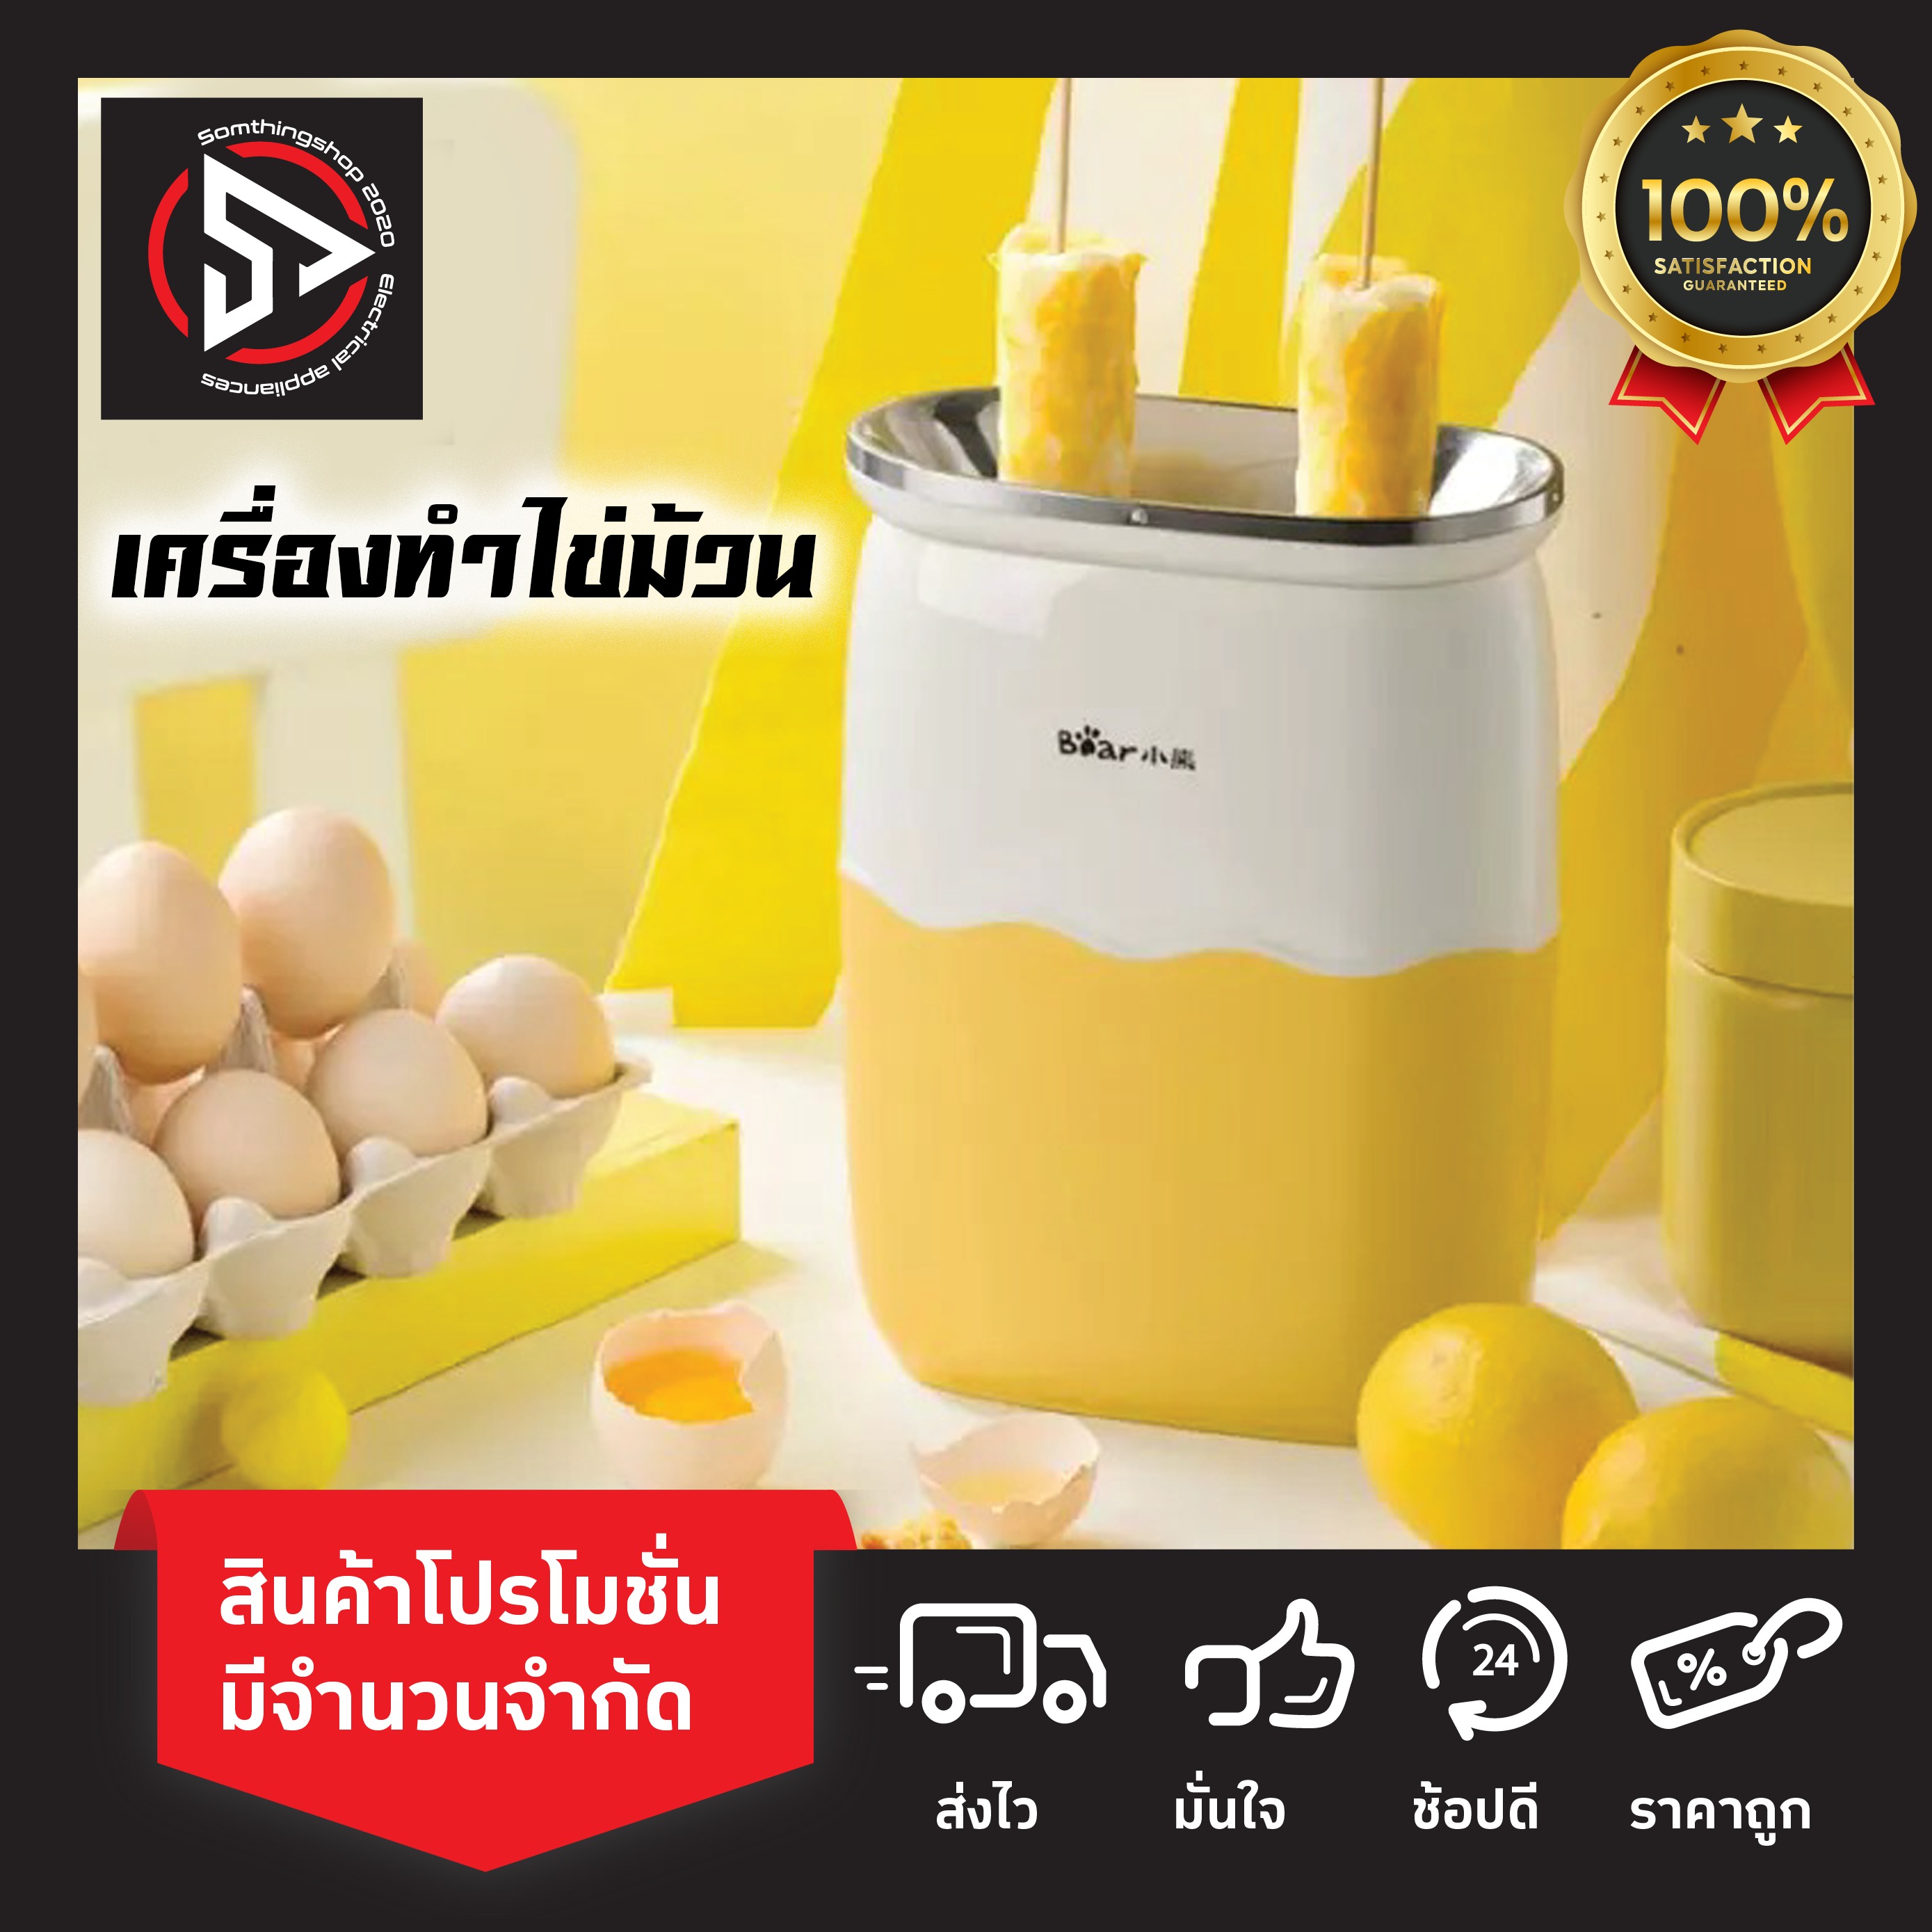 Egg Roll Machine เครื่องม้วนไข่ เครื่องทำไข่ม้วน ไข่ม้วน เครื่องทำไข่ม้วน เครื่องอาหารเช้า กระทะทำไข่กรอมๆ เมนูไข่